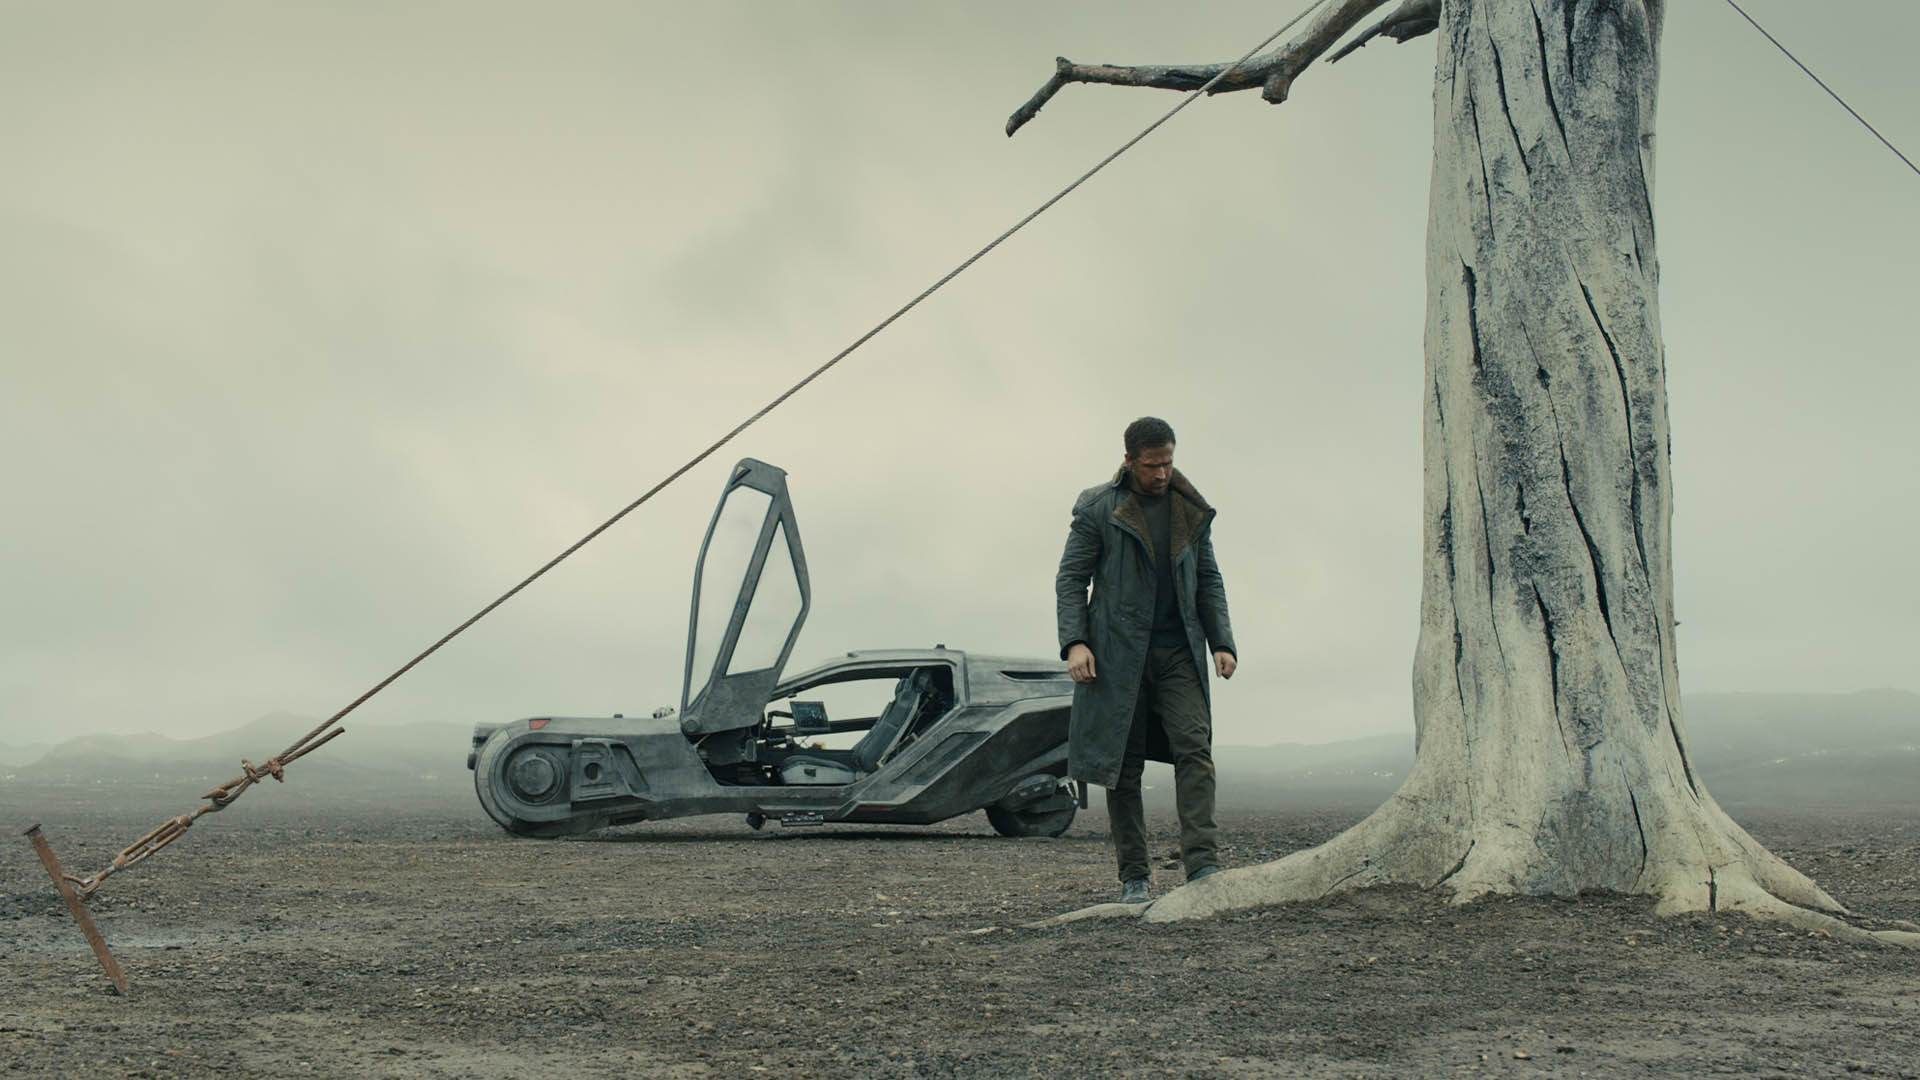 سکانس آغازین فیلم فیلم Blade Runner 2049 با حضور شخصیت کی با بازی رایان گاسلینگ